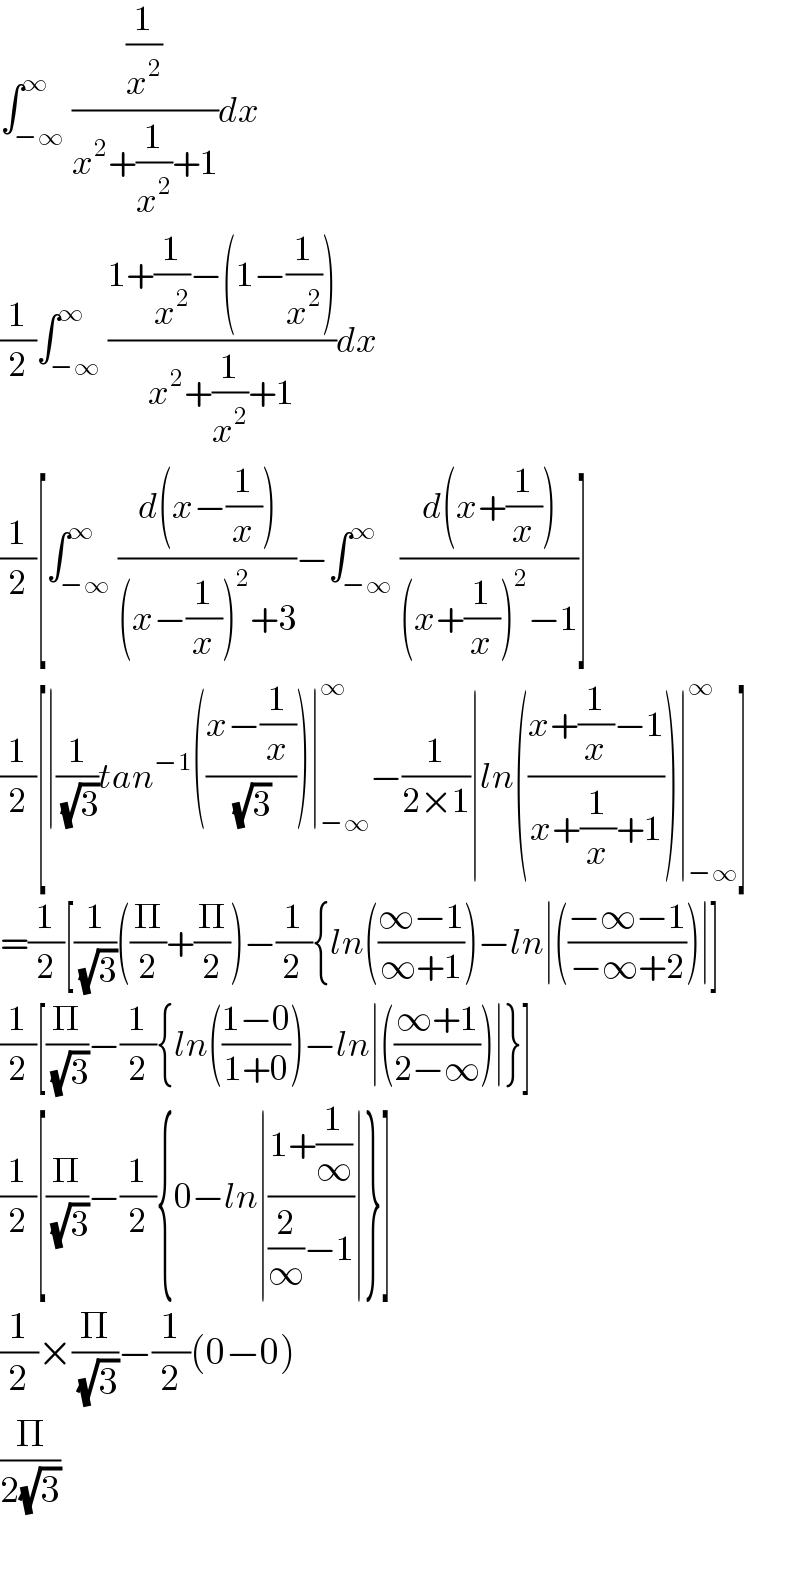 ∫_(−∞) ^∞ ((1/x^2 )/(x^2 +(1/x^2 )+1))dx  (1/2)∫_(−∞) ^∞ ((1+(1/x^2 )−(1−(1/x^2 )))/(x^2 +(1/x^2 )+1))dx  (1/2)[∫_(−∞) ^∞ ((d(x−(1/x)))/((x−(1/x))^2 +3))−∫_(−∞) ^∞ ((d(x+(1/x)))/((x+(1/x))^2 −1))]  (1/2)[∣(1/(√3))tan^(−1) (((x−(1/x))/(√3)))∣_(−∞) ^∞ −(1/(2×1))∣ln(((x+(1/x)−1)/(x+(1/x)+1)))∣_(−∞) ^∞ ]  =(1/2)[(1/(√3))((Π/2)+(Π/2))−(1/(2 )){ln(((∞−1)/(∞+1)))−ln∣(((−∞−1)/(−∞+2)))∣]  (1/2)[(Π/(√3))−(1/2){ln(((1−0)/(1+0)))−ln∣(((∞+1)/(2−∞)))∣}]  (1/2)[(Π/(√3))−(1/2){0−ln∣((1+(1/∞))/((2/∞)−1))∣}]  (1/2)×(Π/(√3))−(1/2)(0−0)  (Π/(2(√3)))    